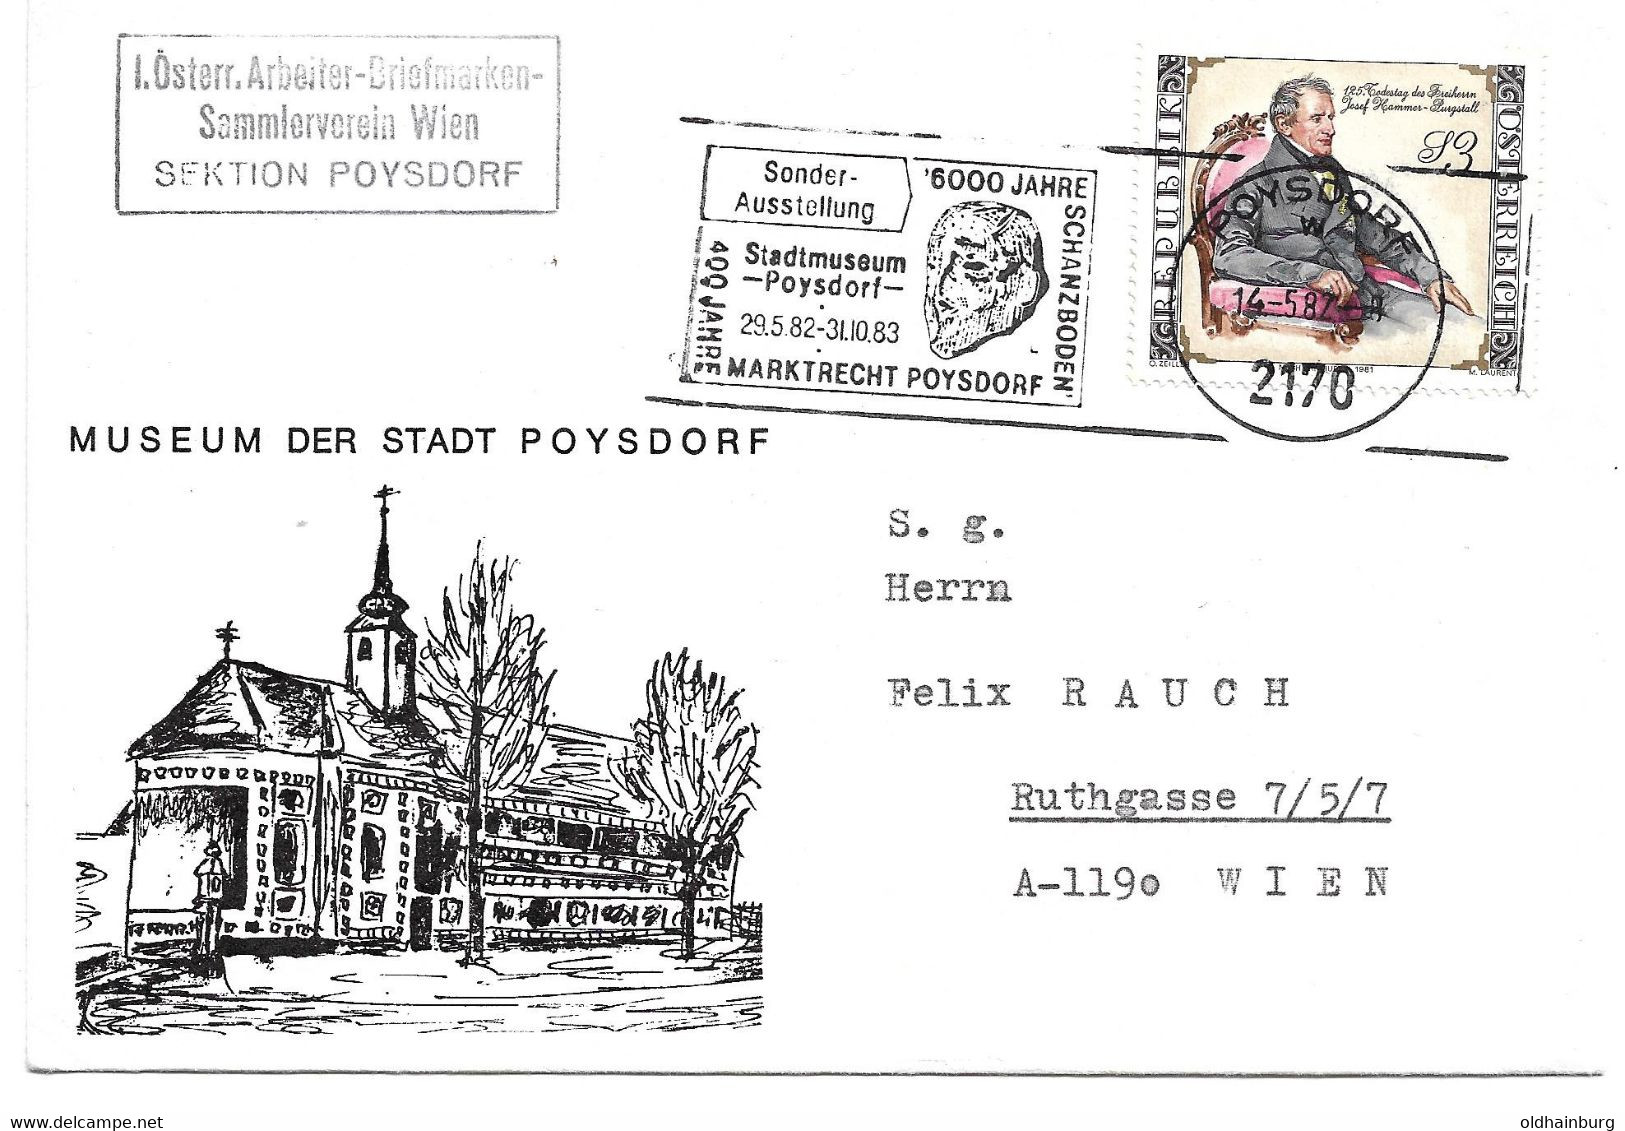 2150s: Heimatbeleg 2170 Poysdorf 1983, ABSV, Museum, Weinviertler Volksbanken - Poysdorf